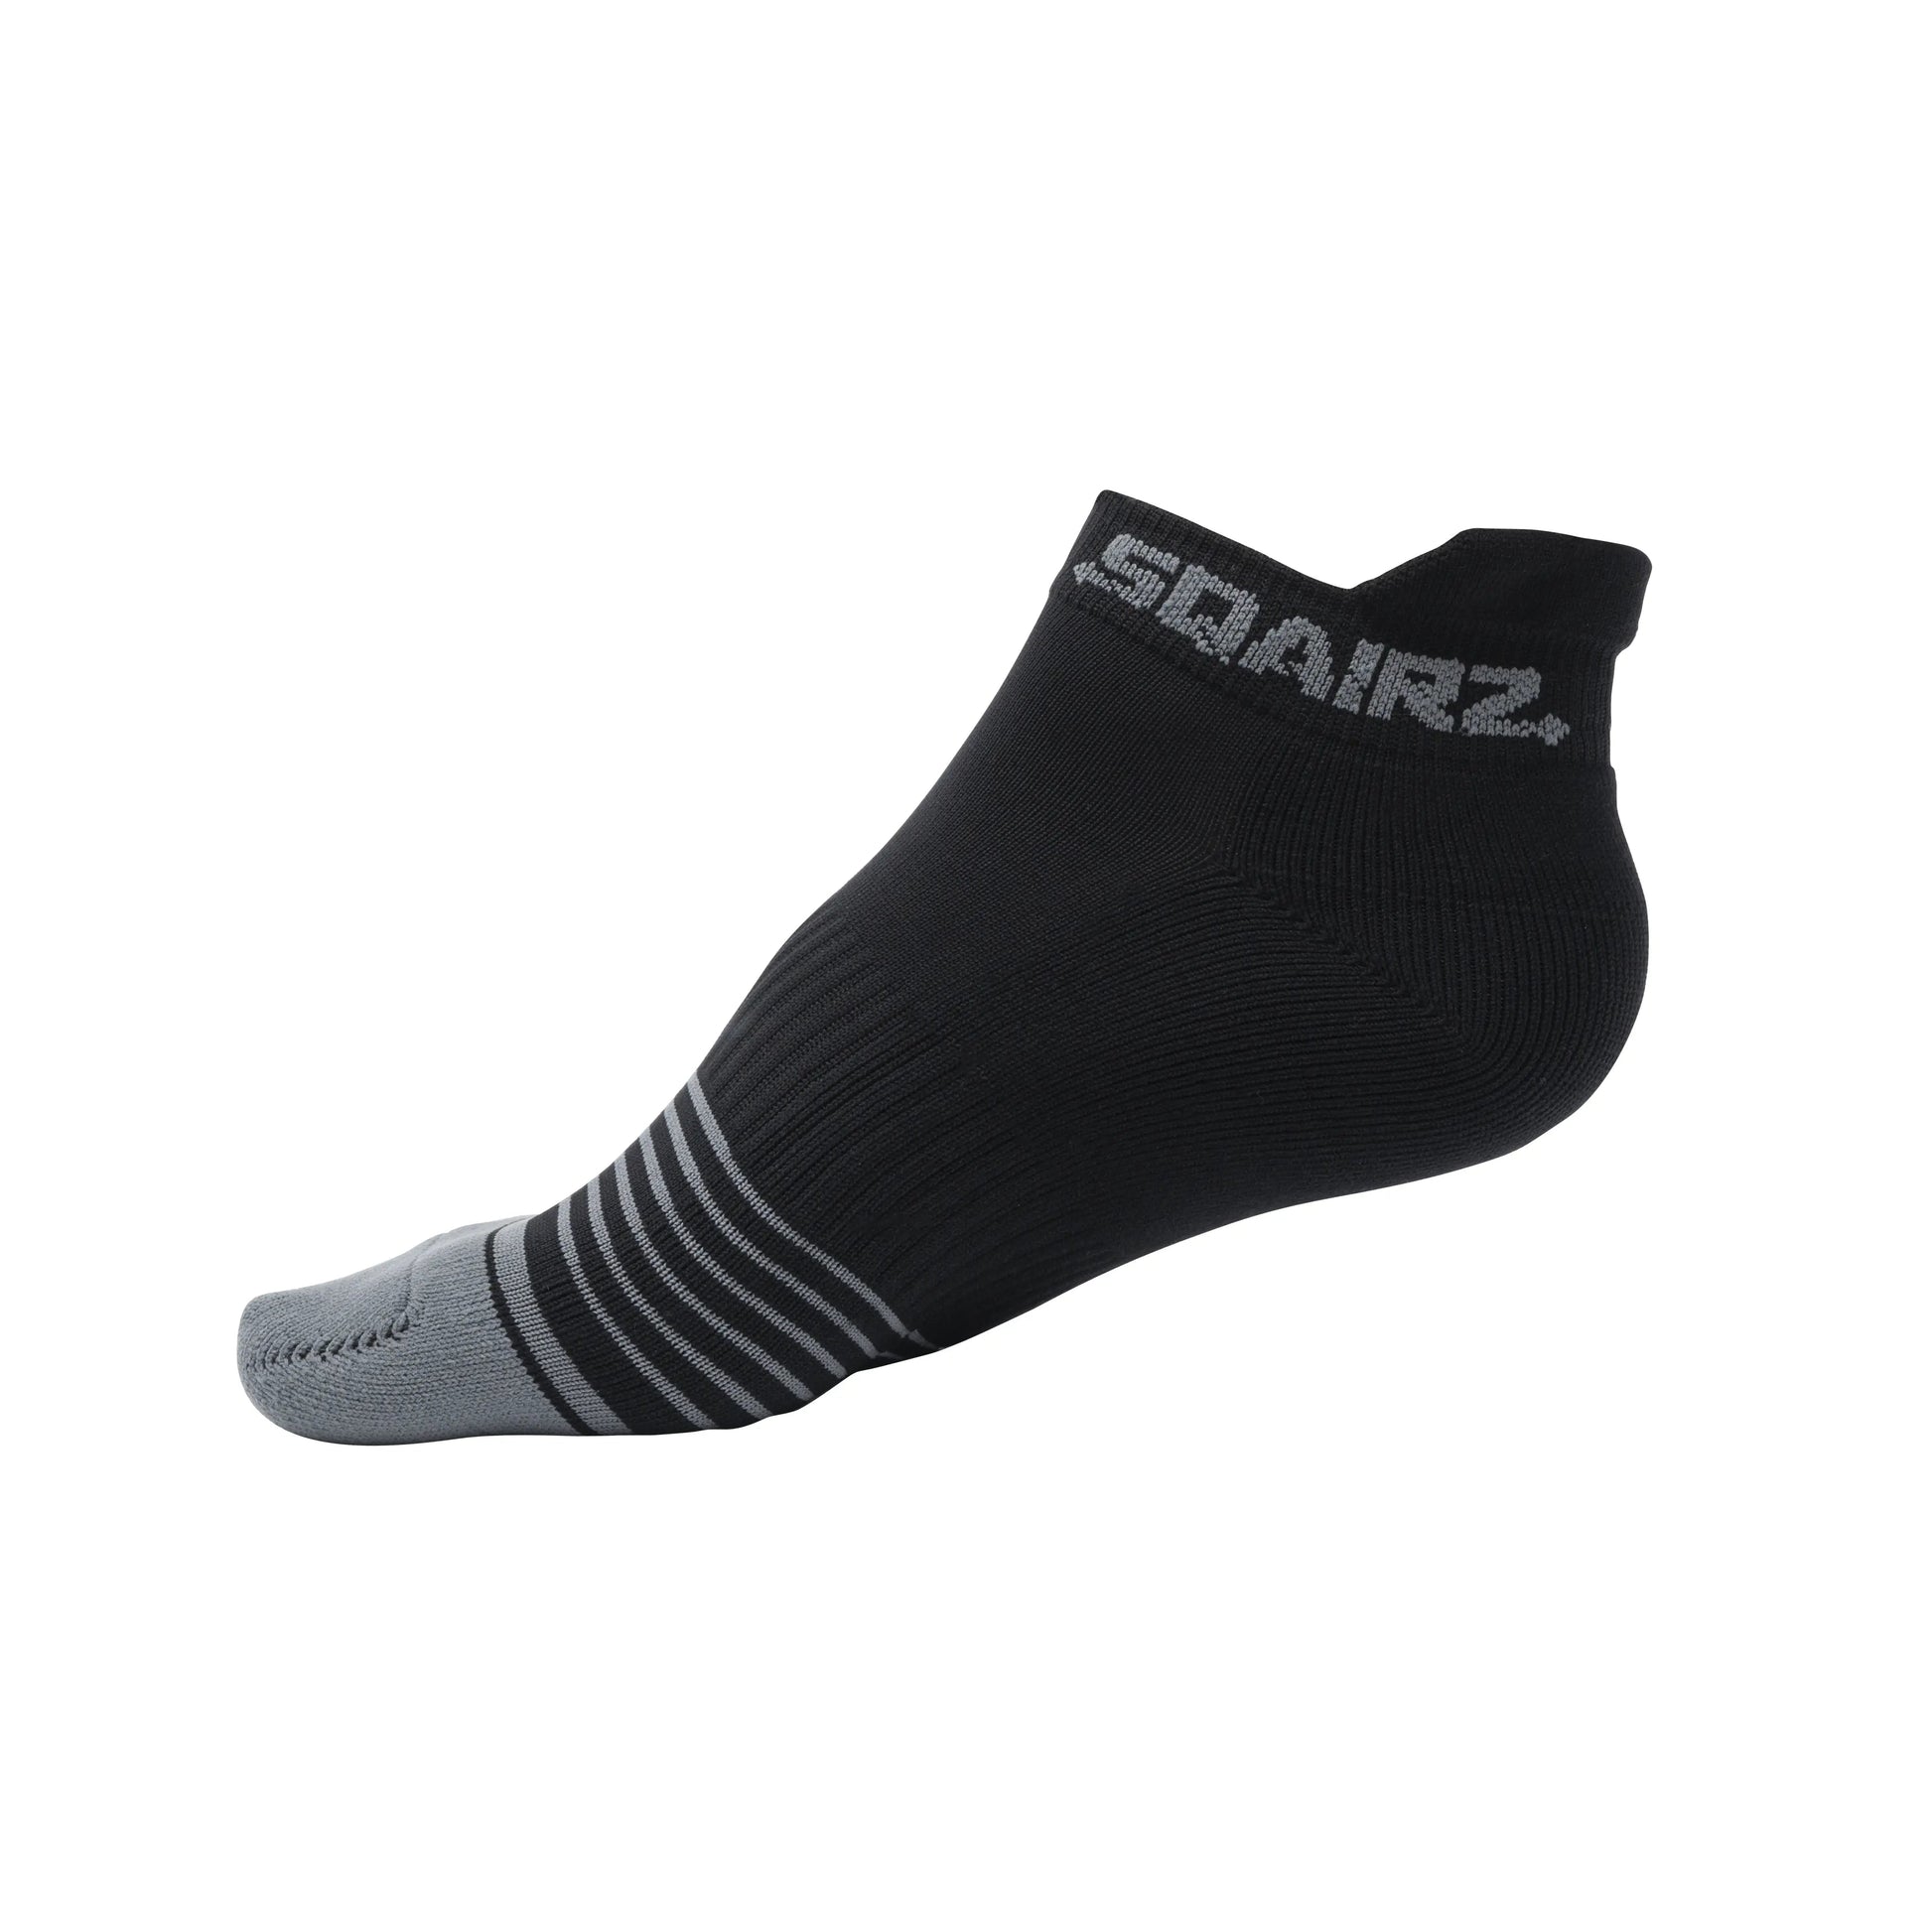 SQAIRZ-Women’s Cushioned Golf Socks (3X Pack)